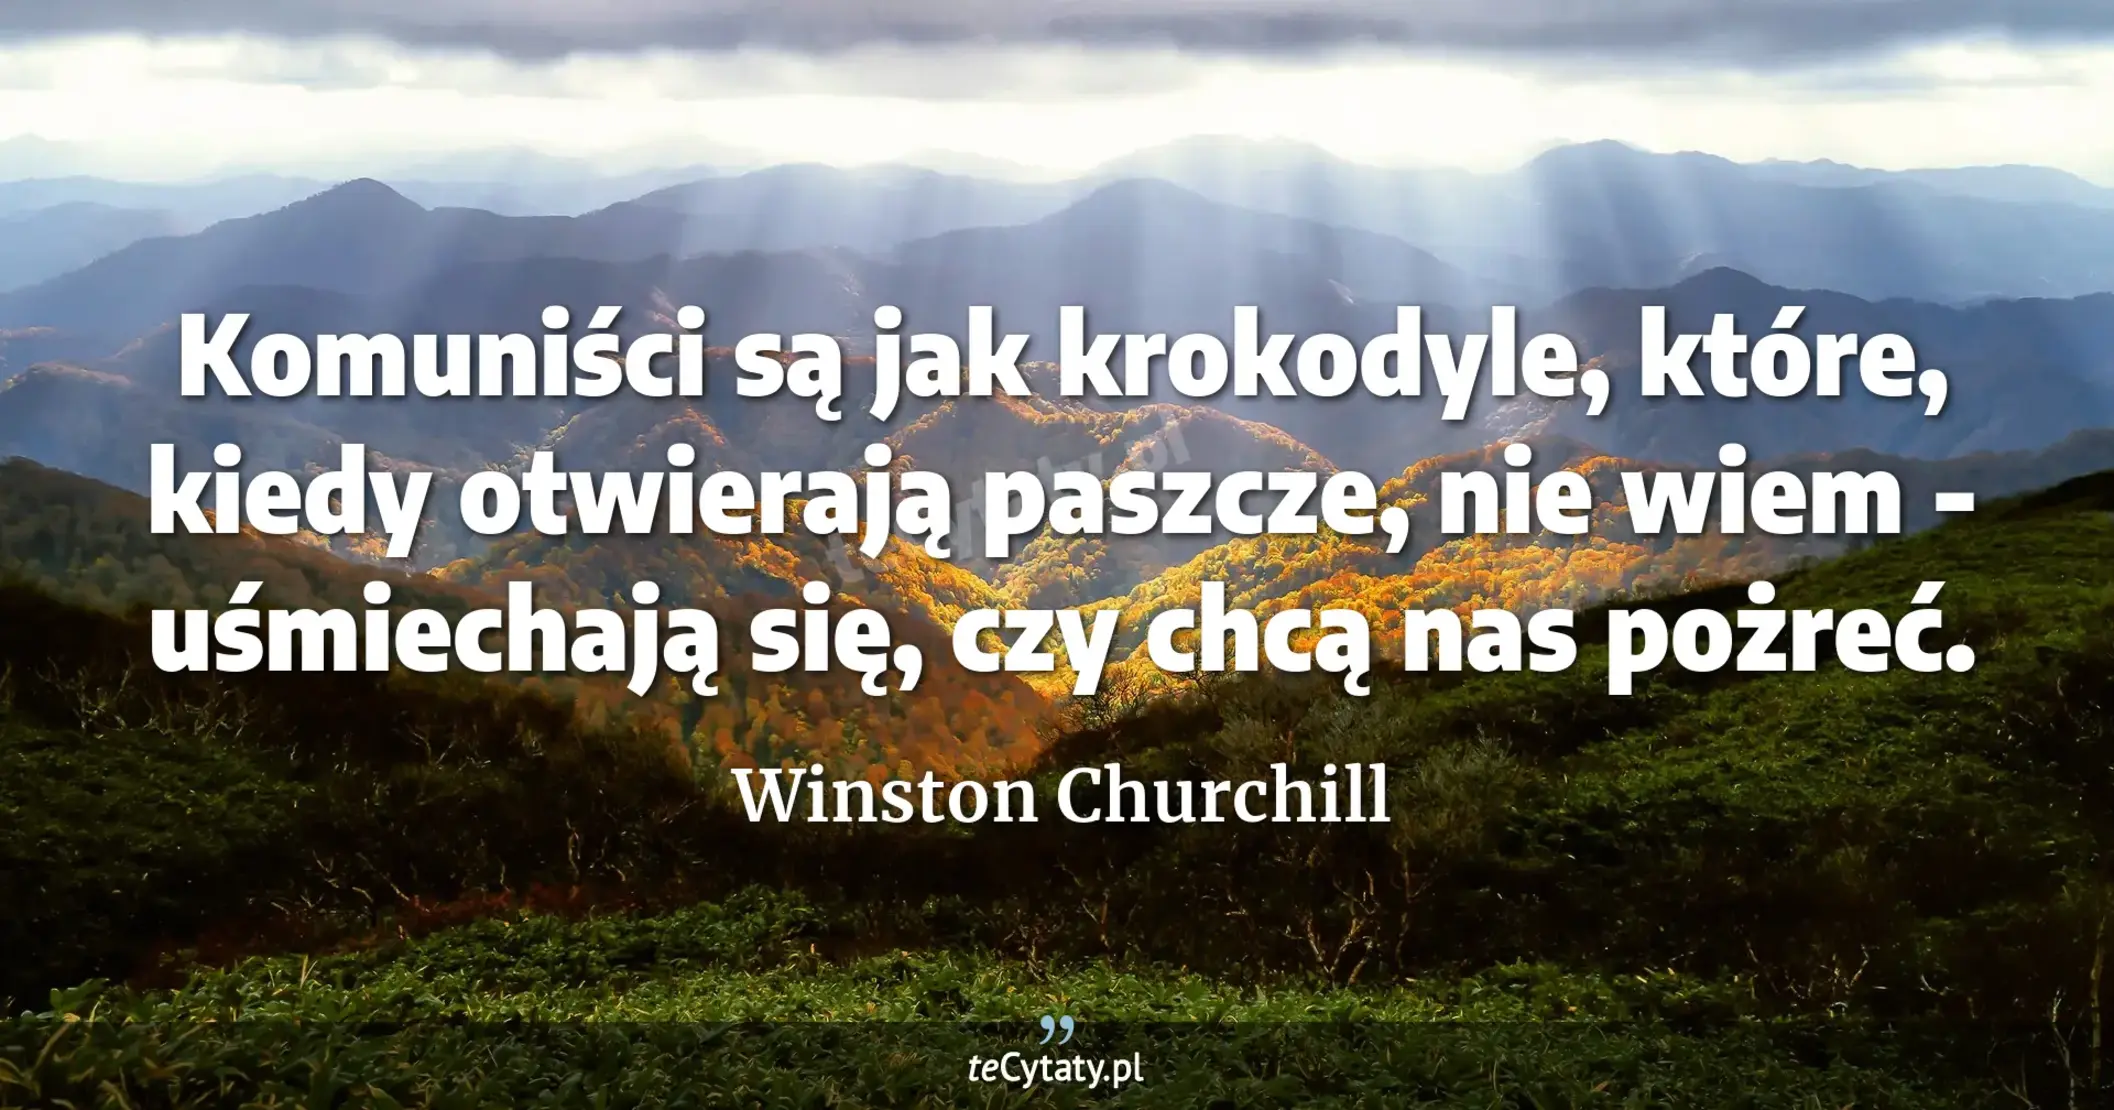 Komuniści są jak krokodyle, które, kiedy otwierają paszcze, nie wiem - uśmiechają się, czy chcą nas pożreć. - Winston Churchill